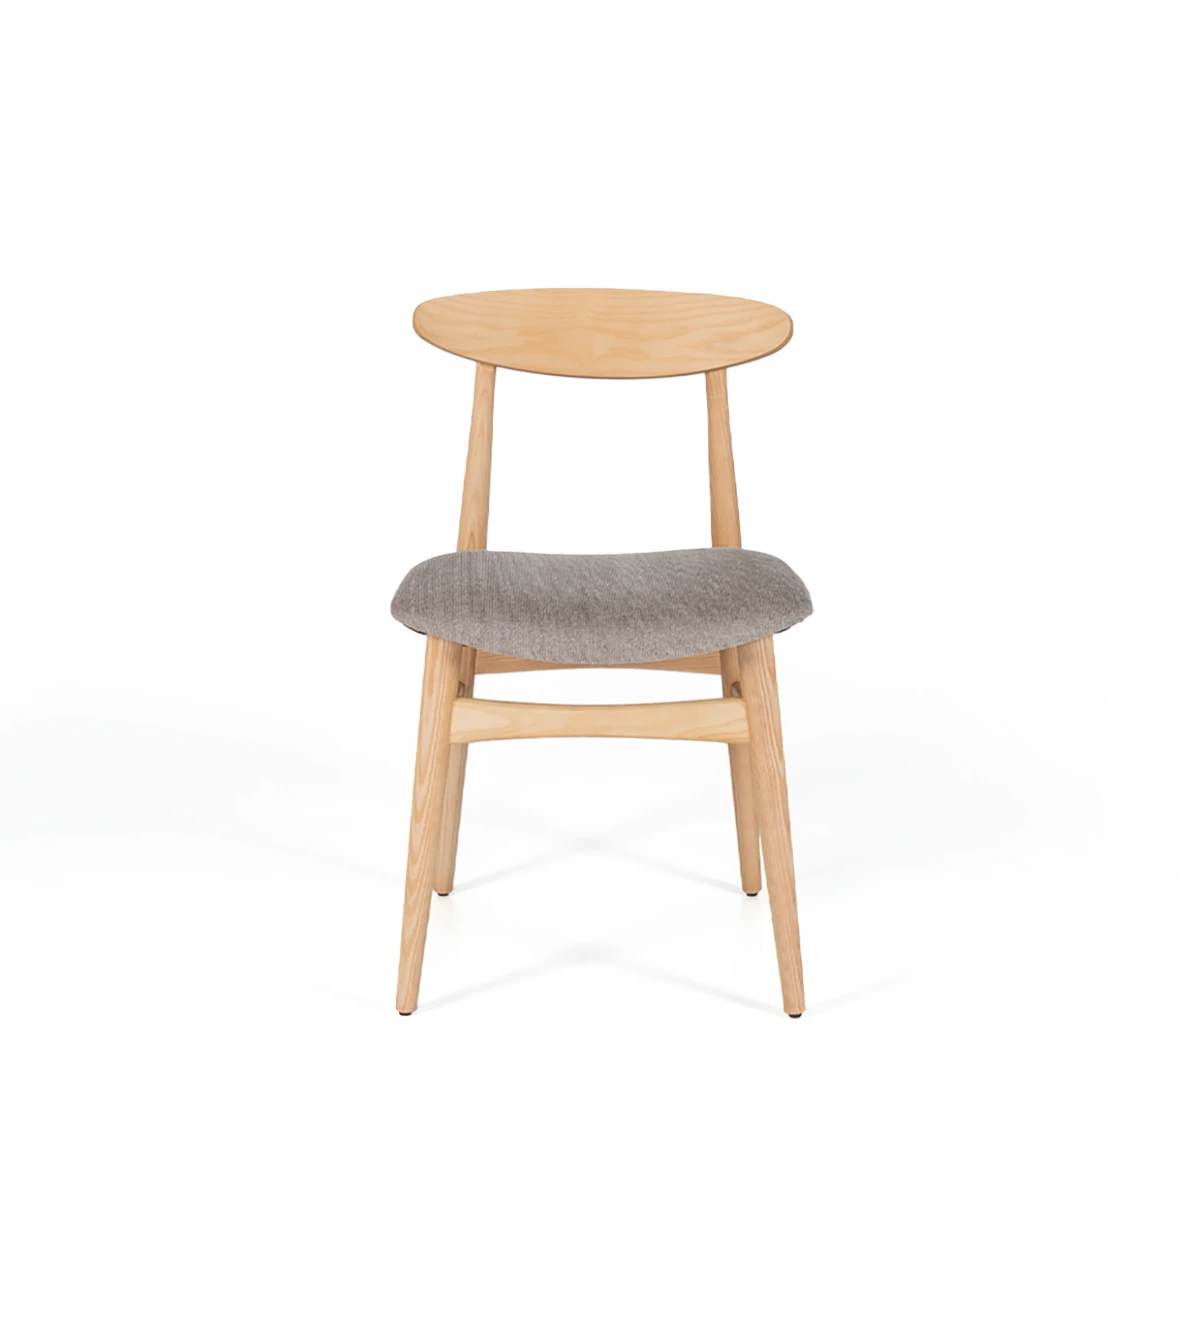 Chaise en bois de frêne, couleur naturelle, avec assise recouverte de tissu.